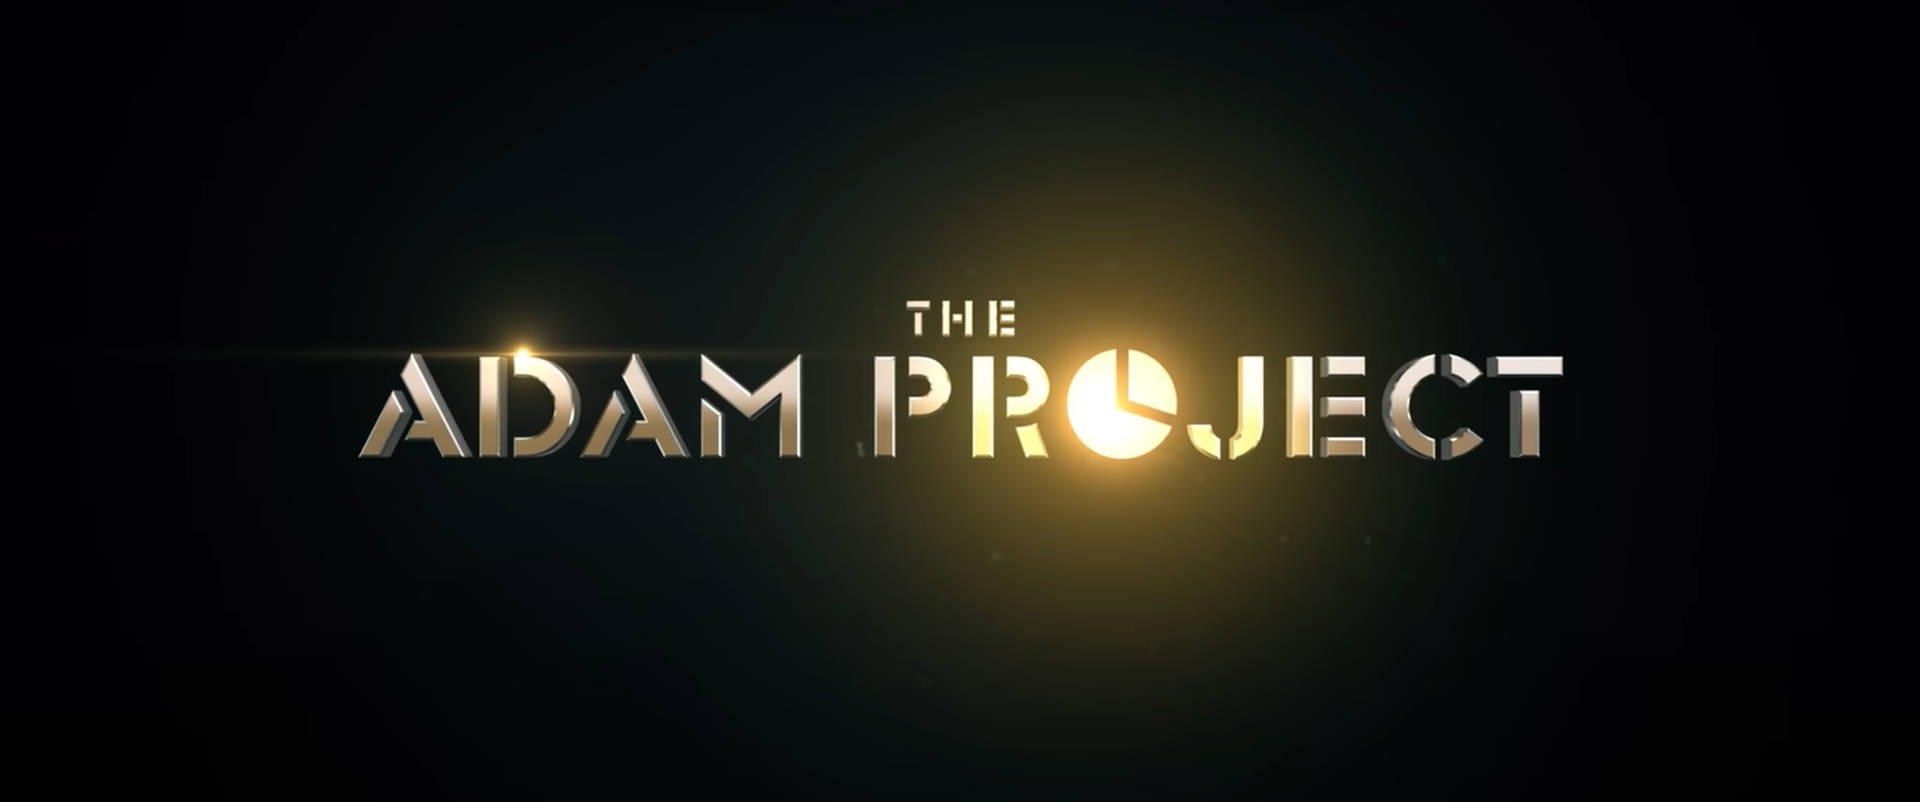 Fondos Del Proyecto Adam